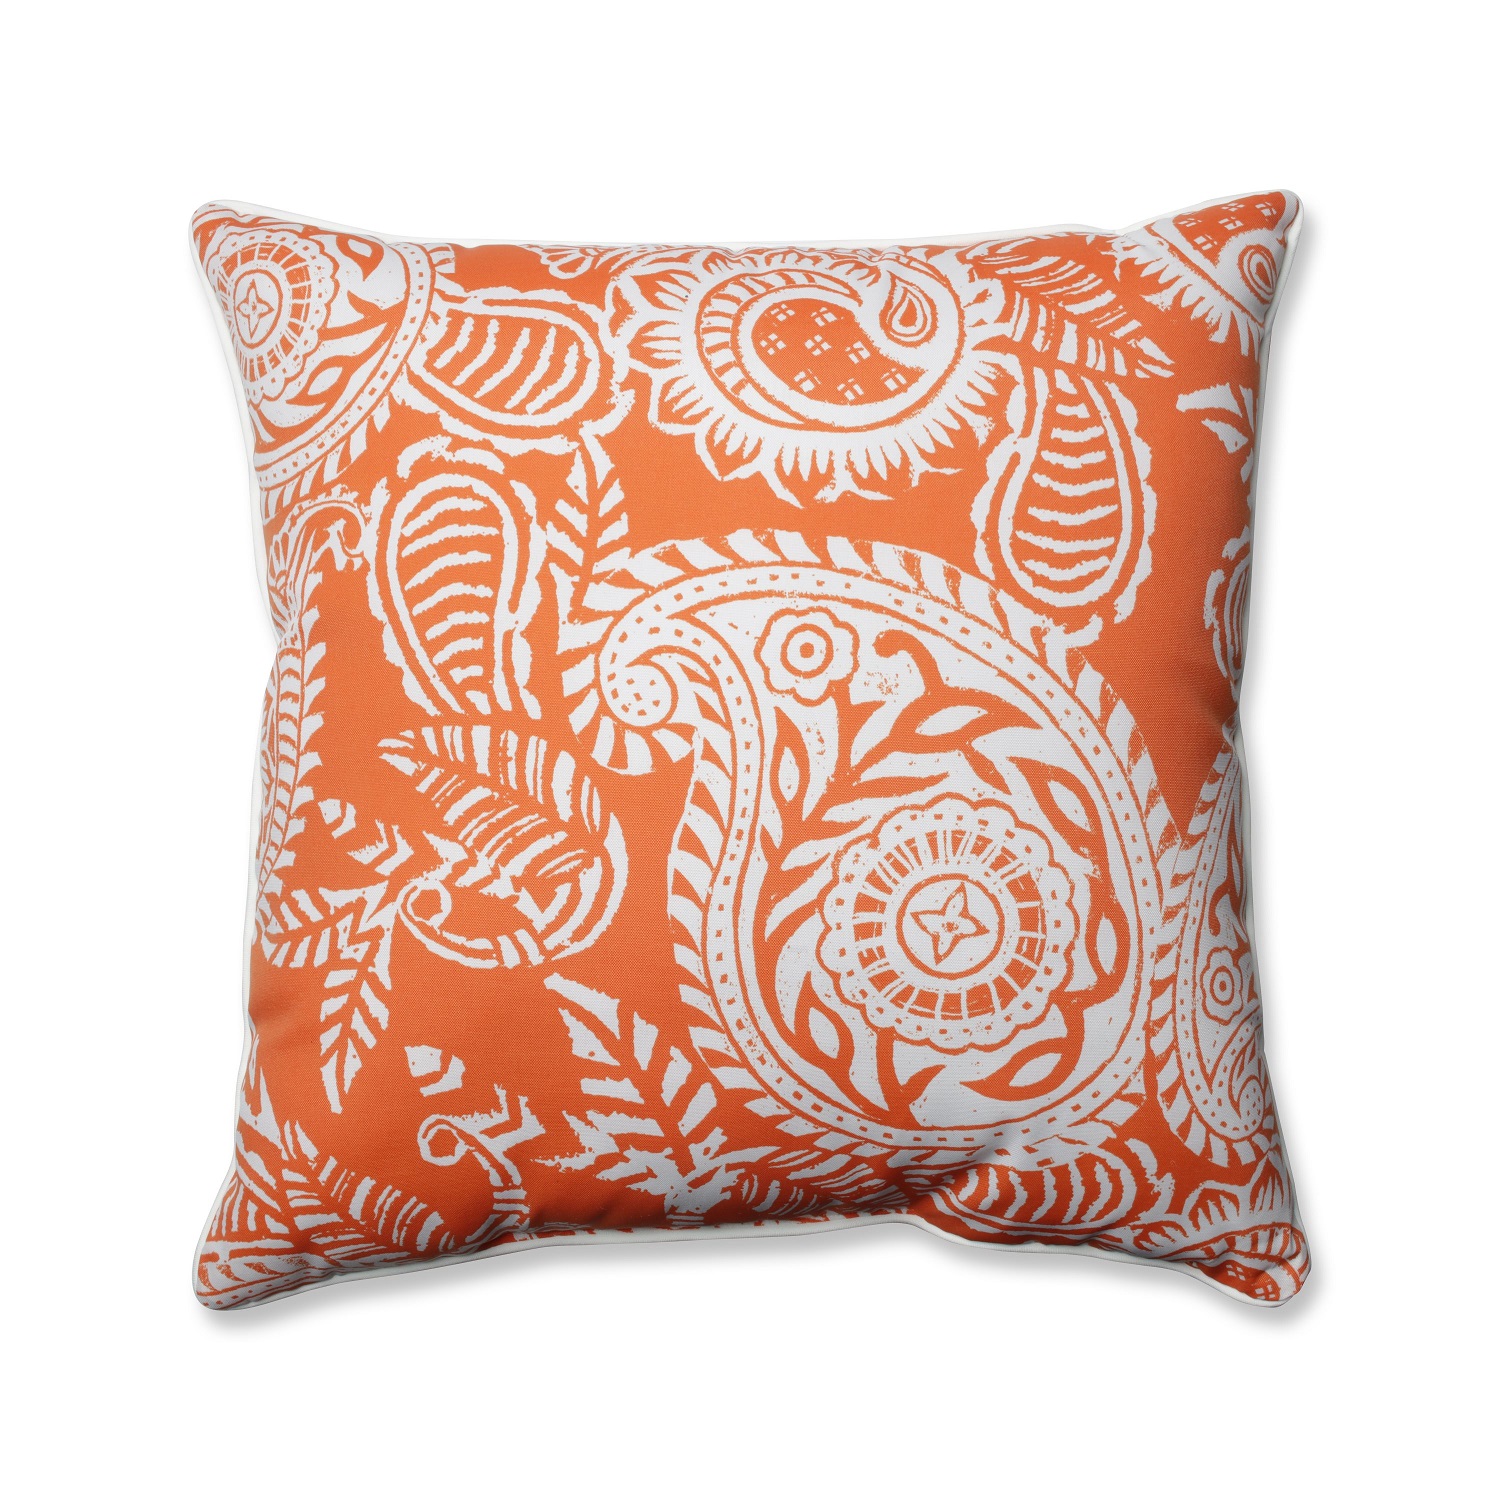 Pillow Perfect Outdoor/Indoor Addie Terra Cotta Floor Pillow, 25" x 25", Orange